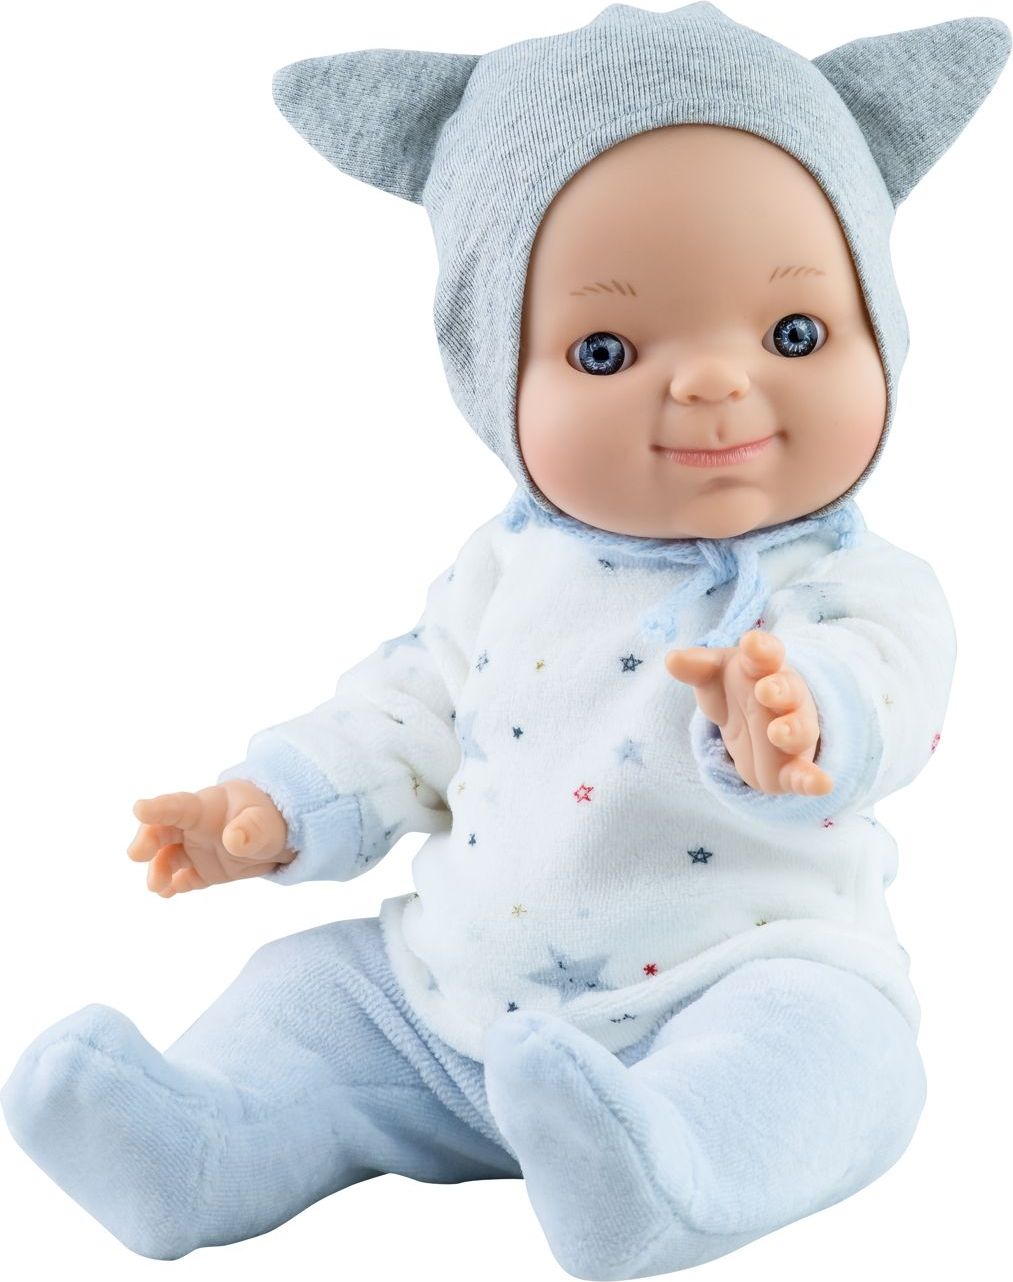 Realistická panenka chlapeček Alberto od firmy Paola Reina ze Španělska - obrázek 1